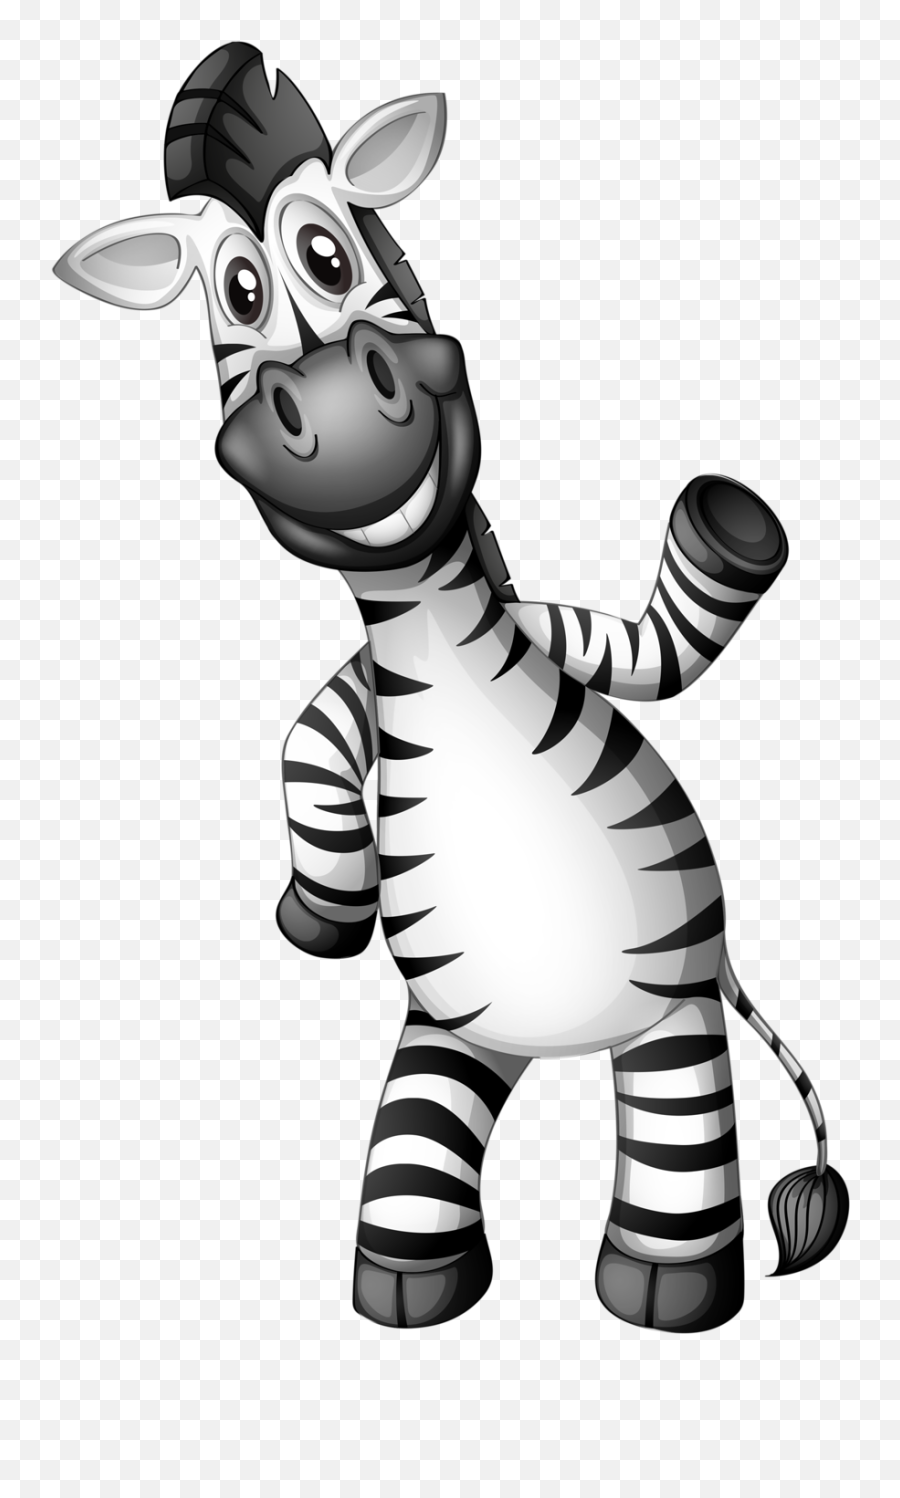 Download U203fu2040zebra Likeu203fu2040 - Smiling Zebra Clipart Png Zebra Vector Man Emoji,Zebra Clipart